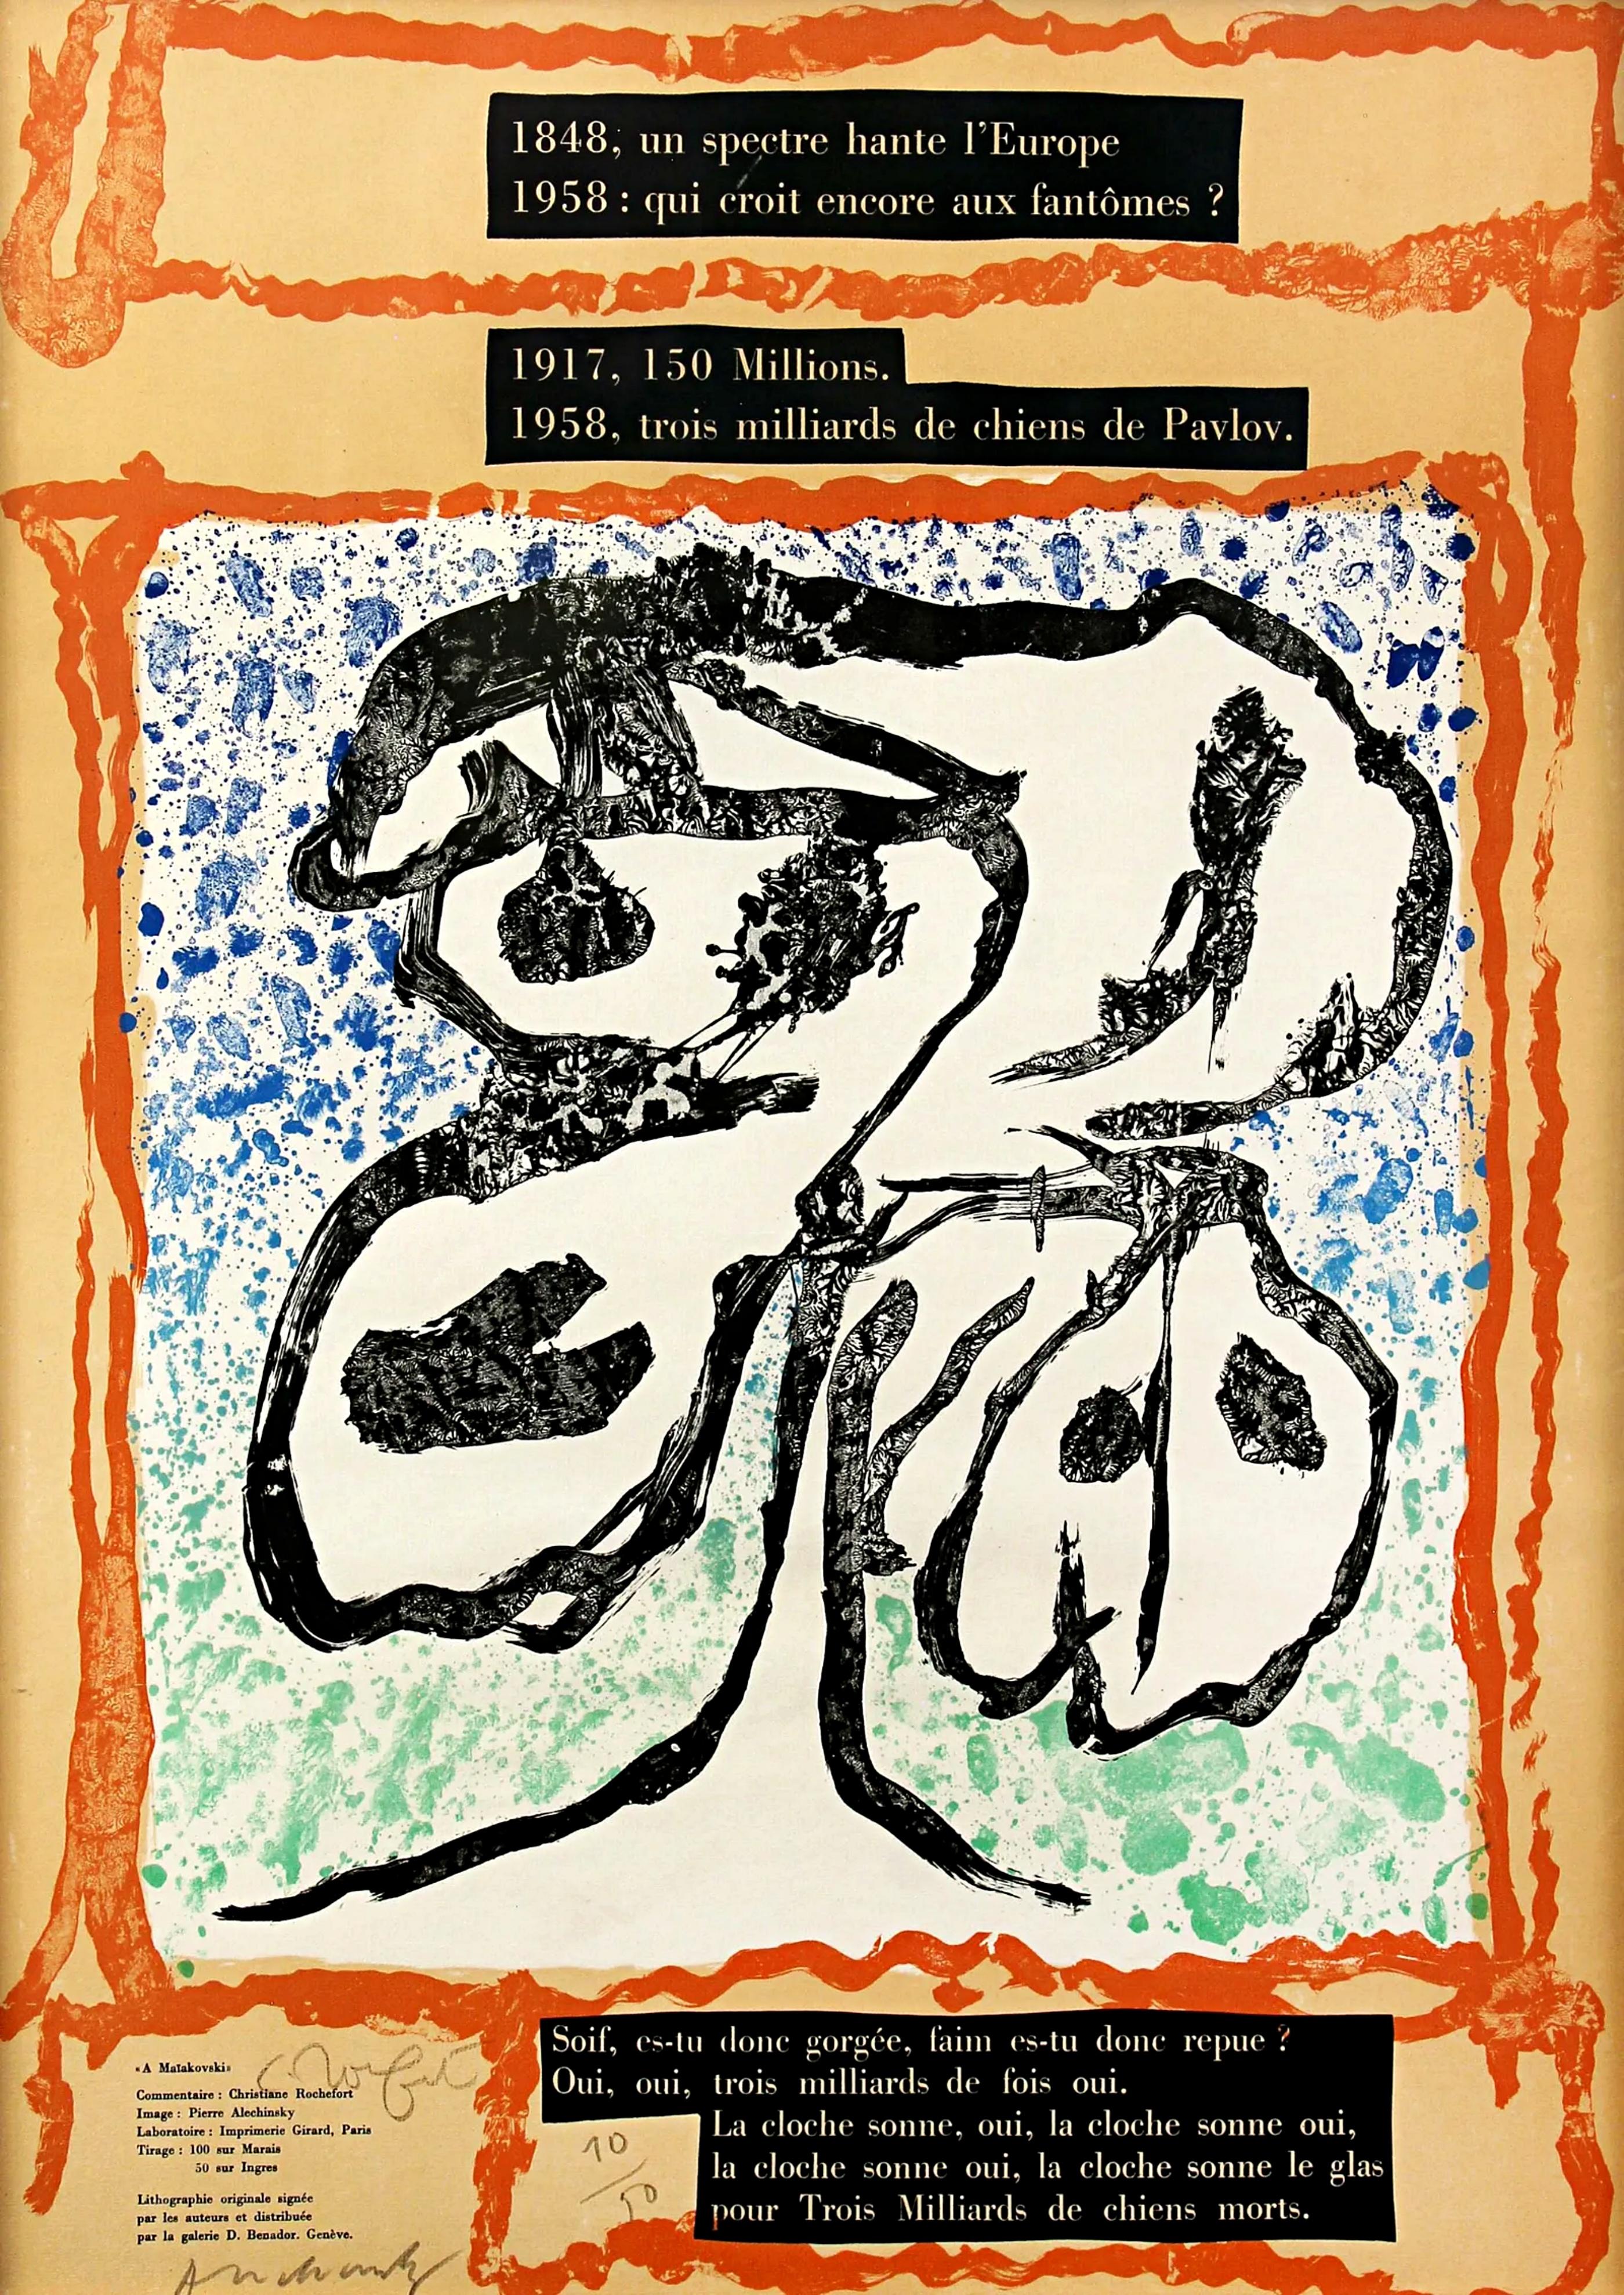 A Maiakovski (For Mayakovsky) signed by Alechinsky & Christine Rochefort #10/50  - Print by Pierre Alechinsky